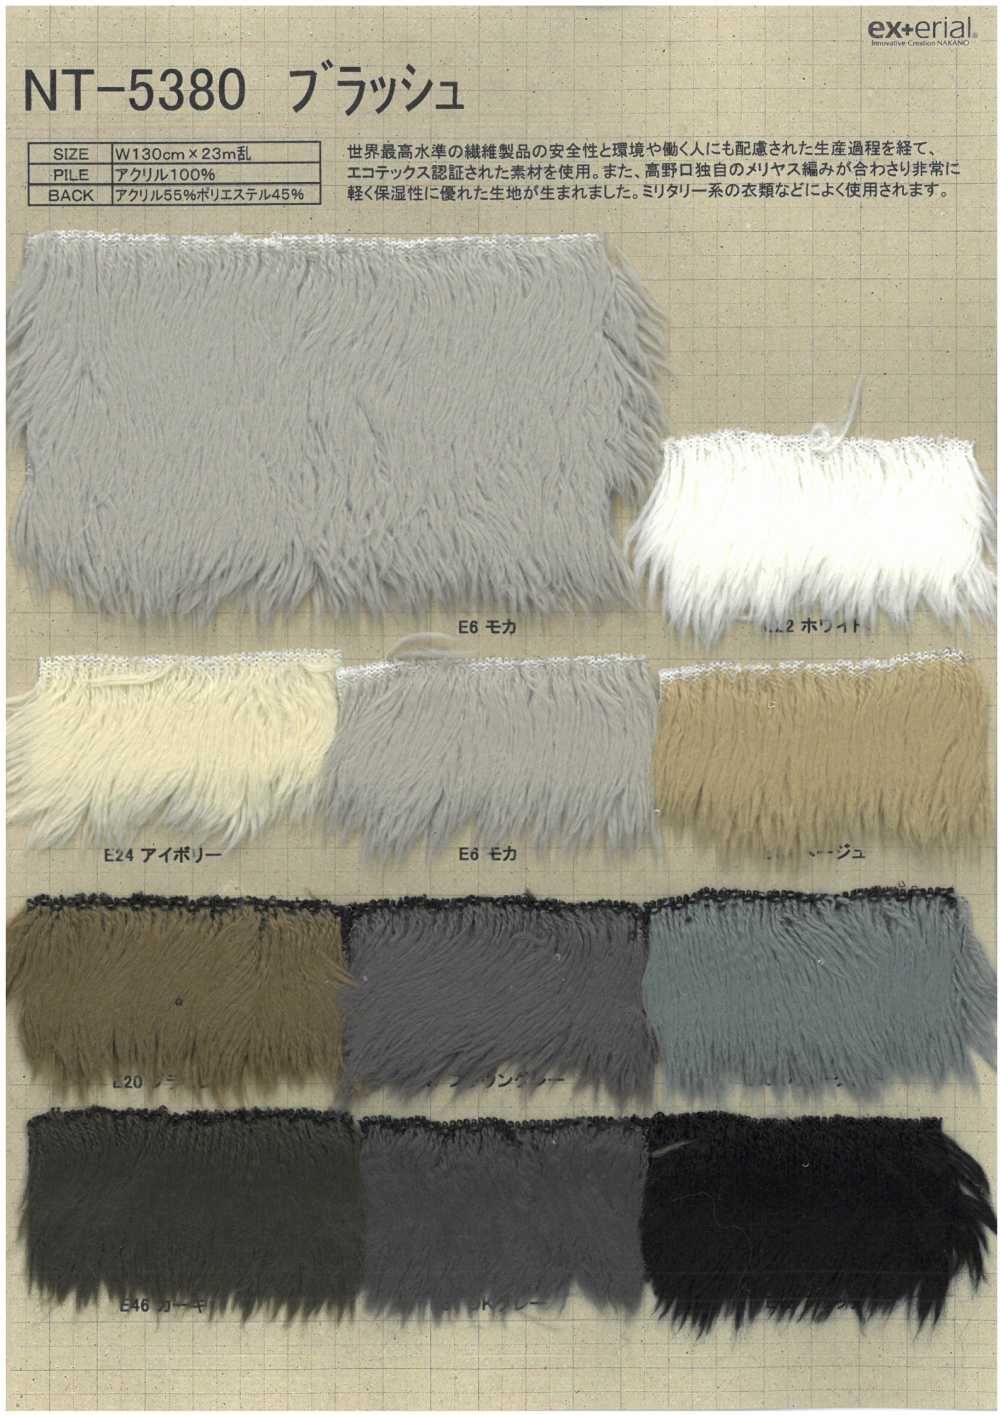 NT-5380 Fourrure Artisanale [Pinceau][Fabrication De Textile] Industrie Du Jersey Nakano